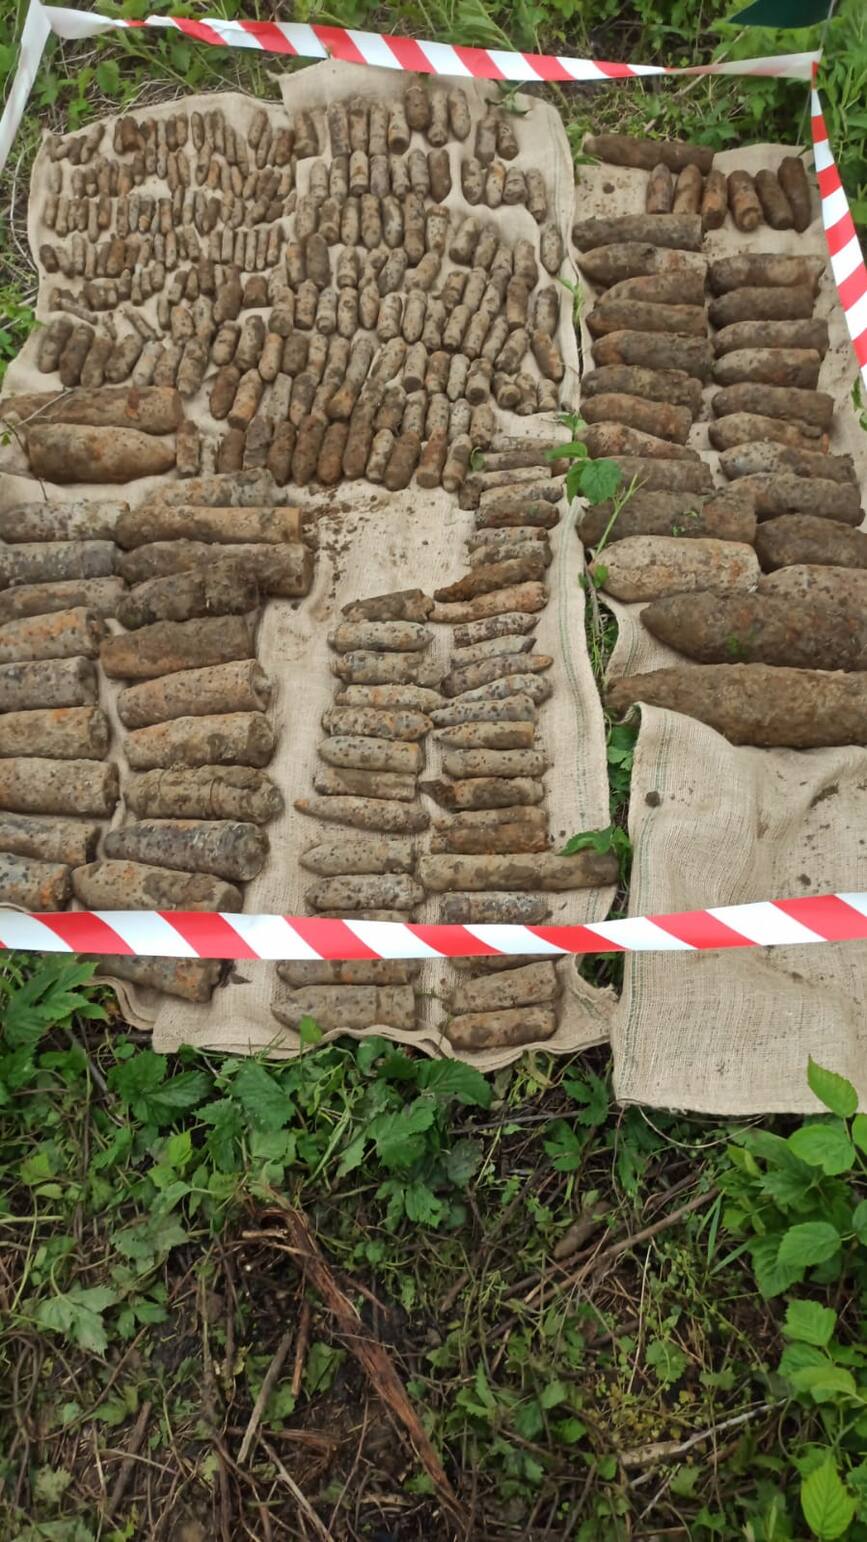 Misiune de distrugere a munitiei descoperite pe viitoarea autostrada Moldova A7 | imaginea 2